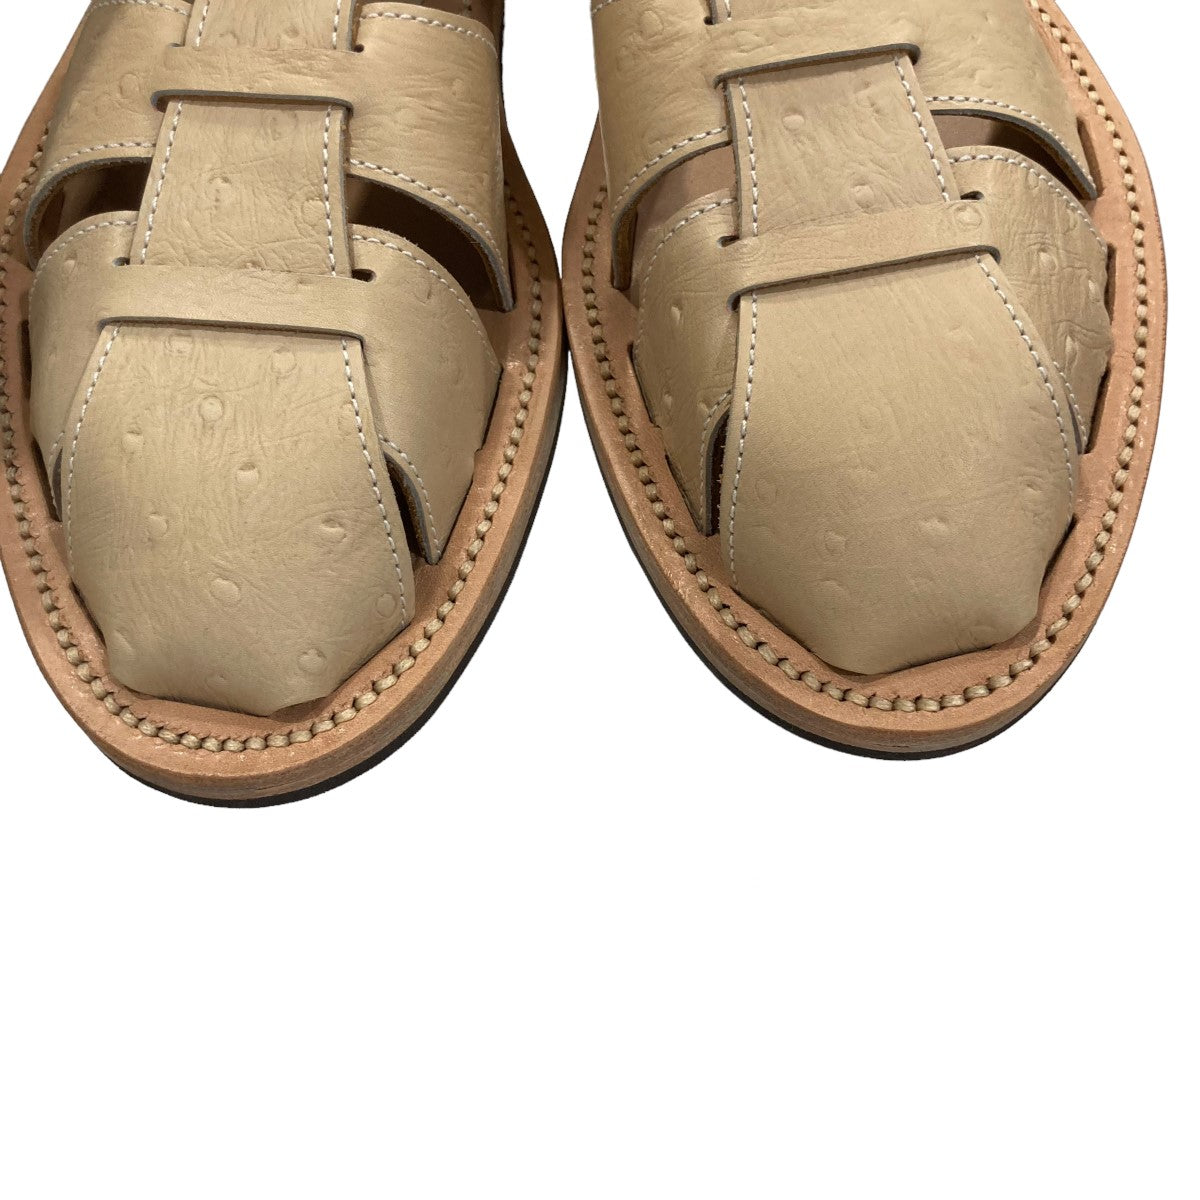 新品最新作BRUSCHETTA SHOES ORLEANS BC1 グルカサンダル 靴